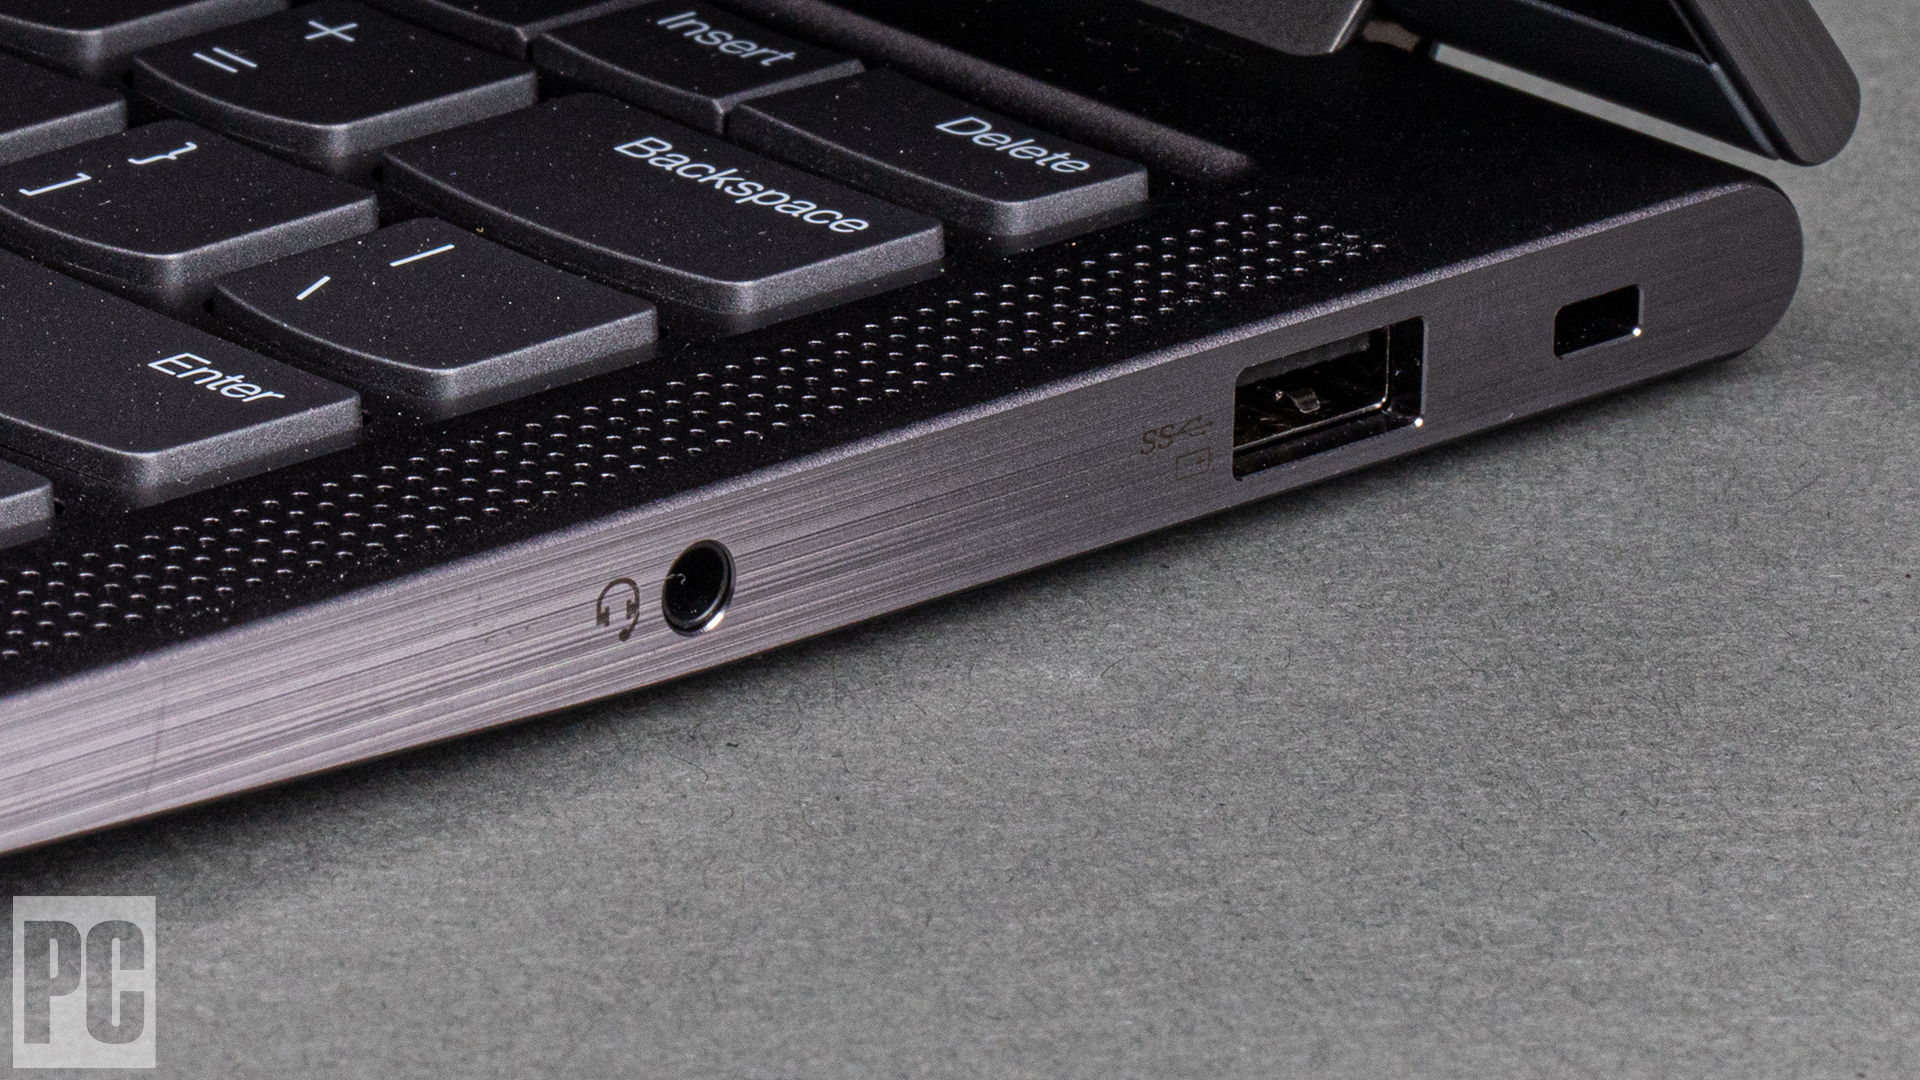 Lenovo ThinkPad X1 Yoga Gen 6 (2021) (bordo destro)